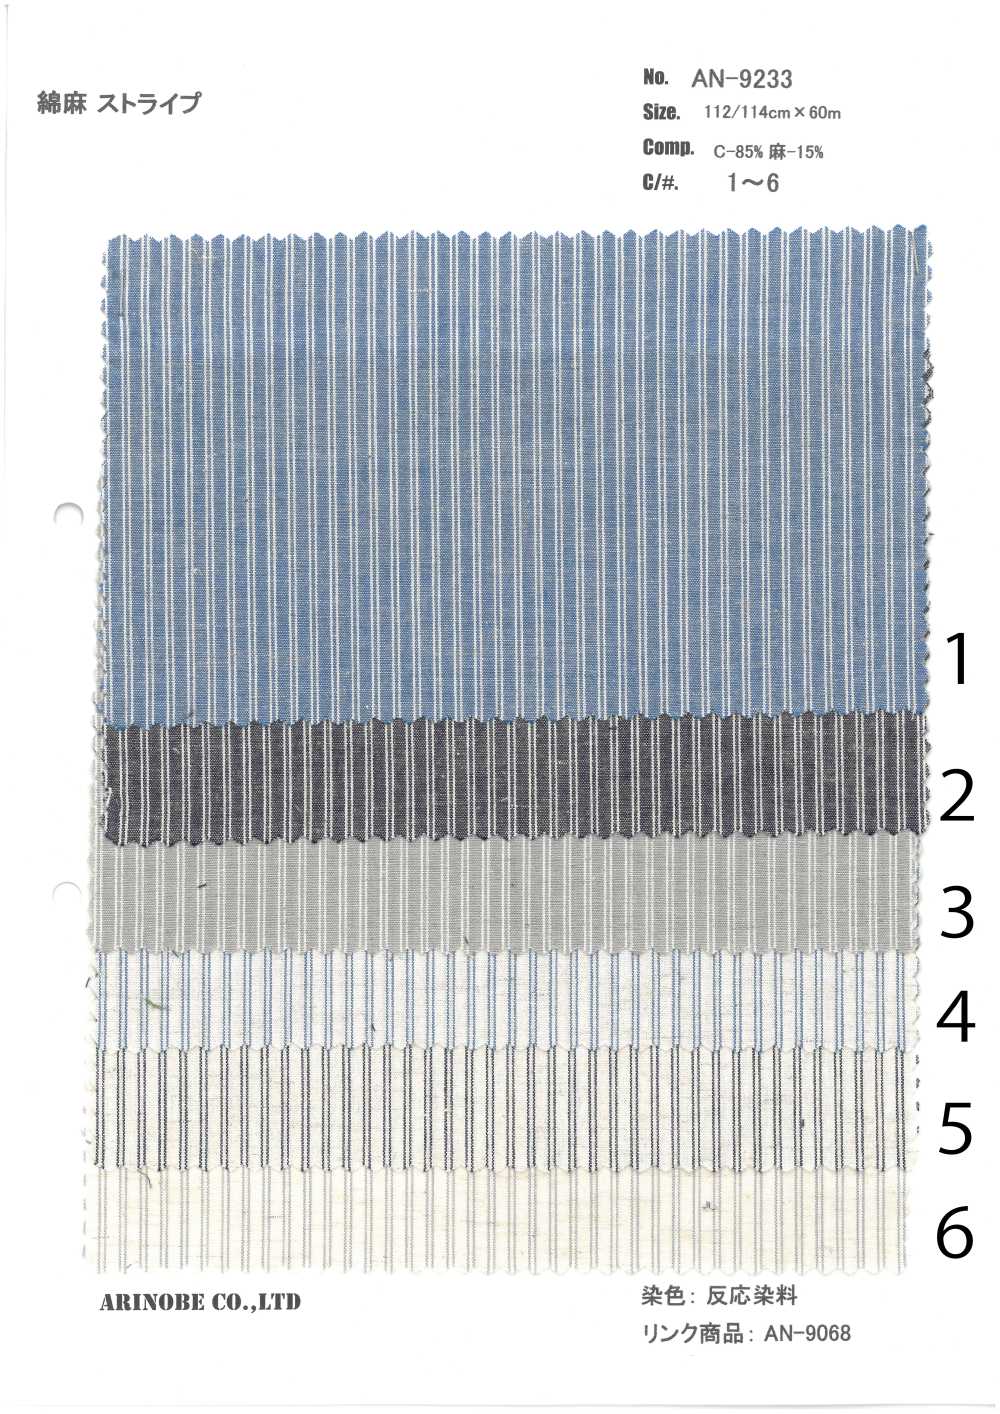 AN-9233 Leinenstreifen[Textilgewebe] ARINOBE CO., LTD.